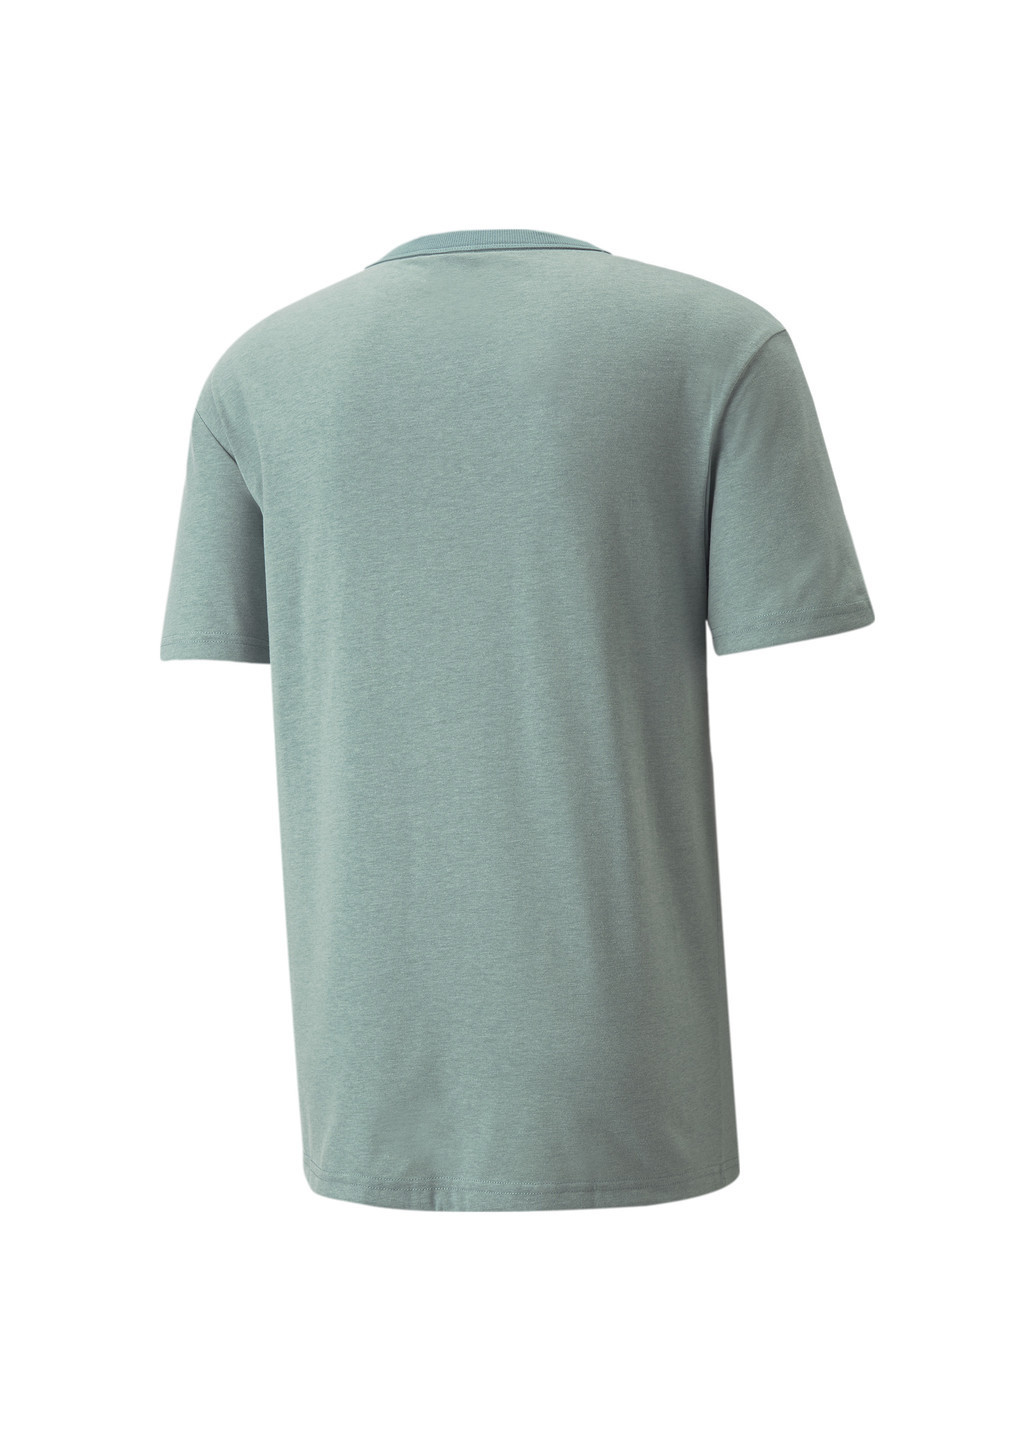 Синяя футболка classics heather men's tee Puma